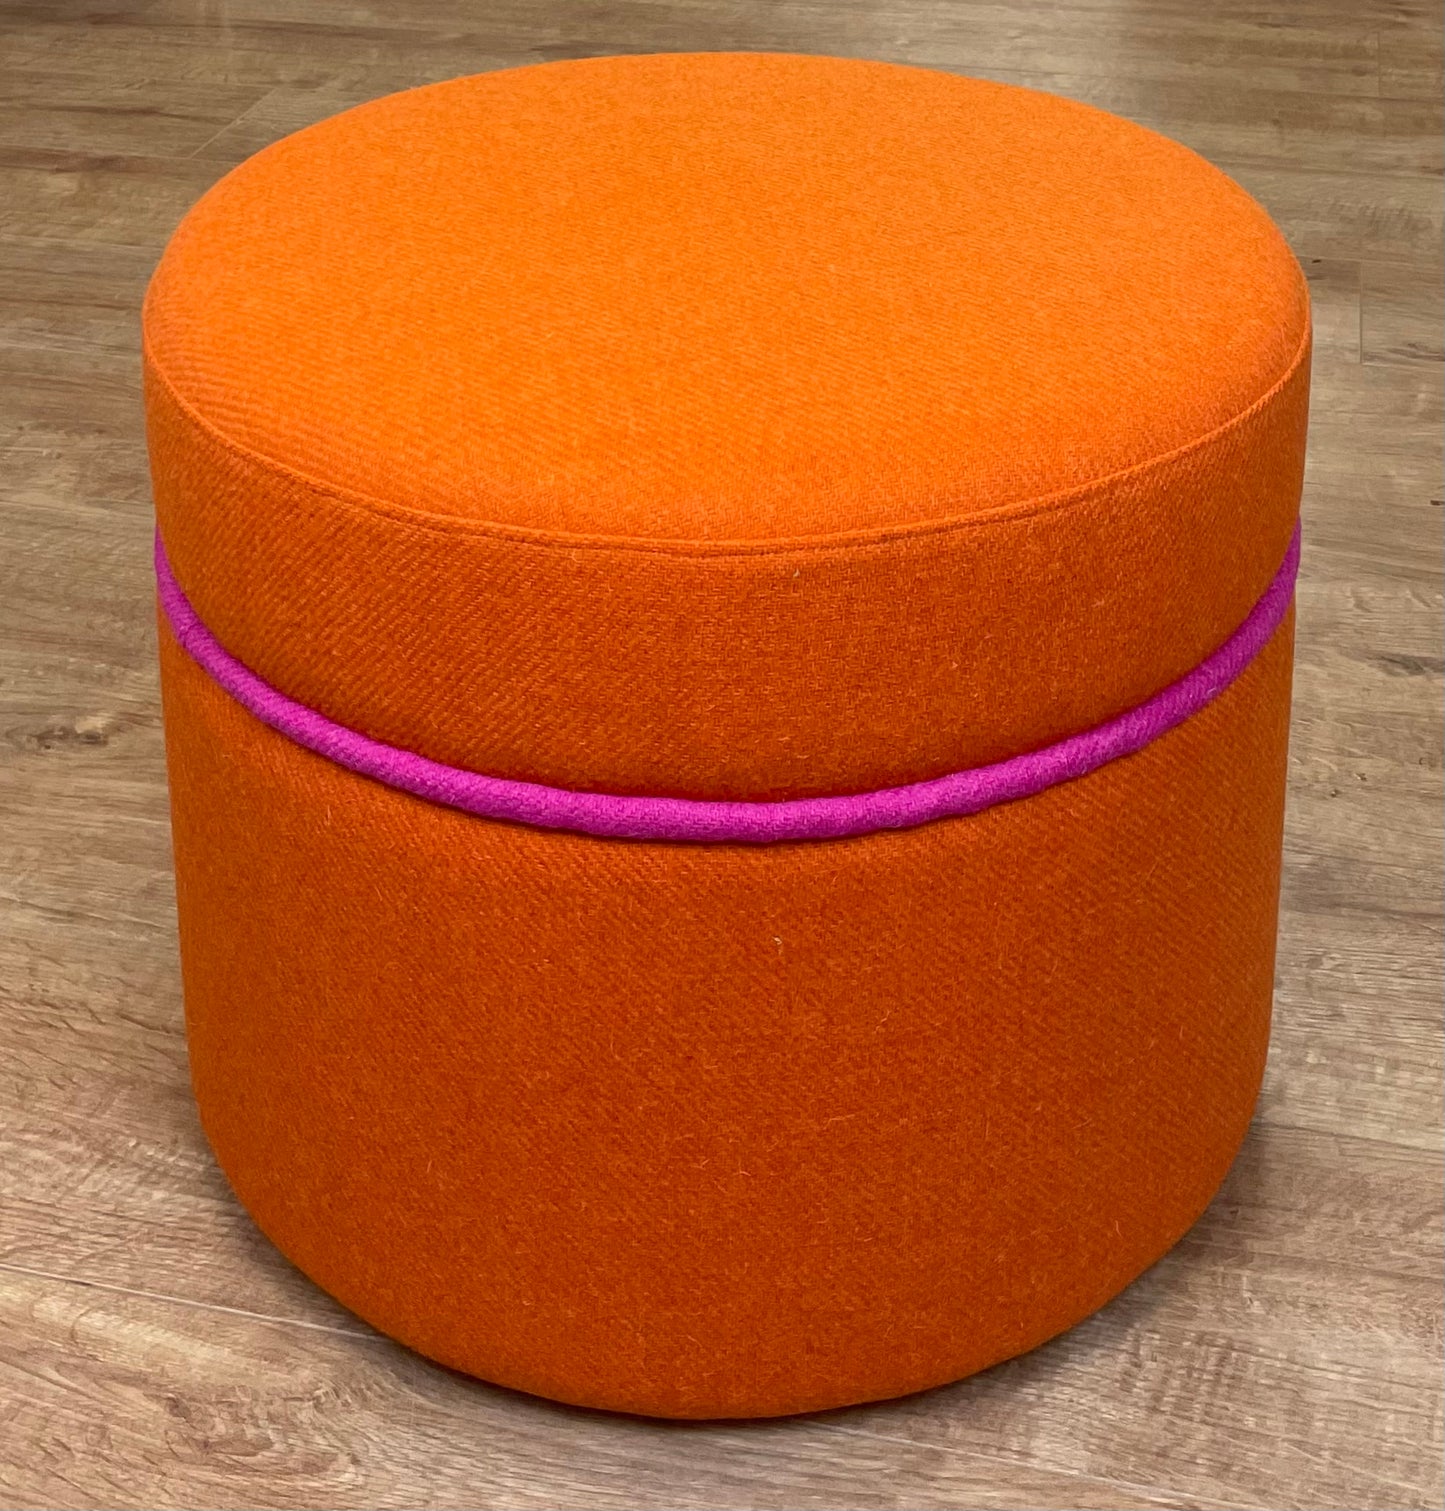 Orange Harris Tweed Floating Footstool with Pink Piping Detail